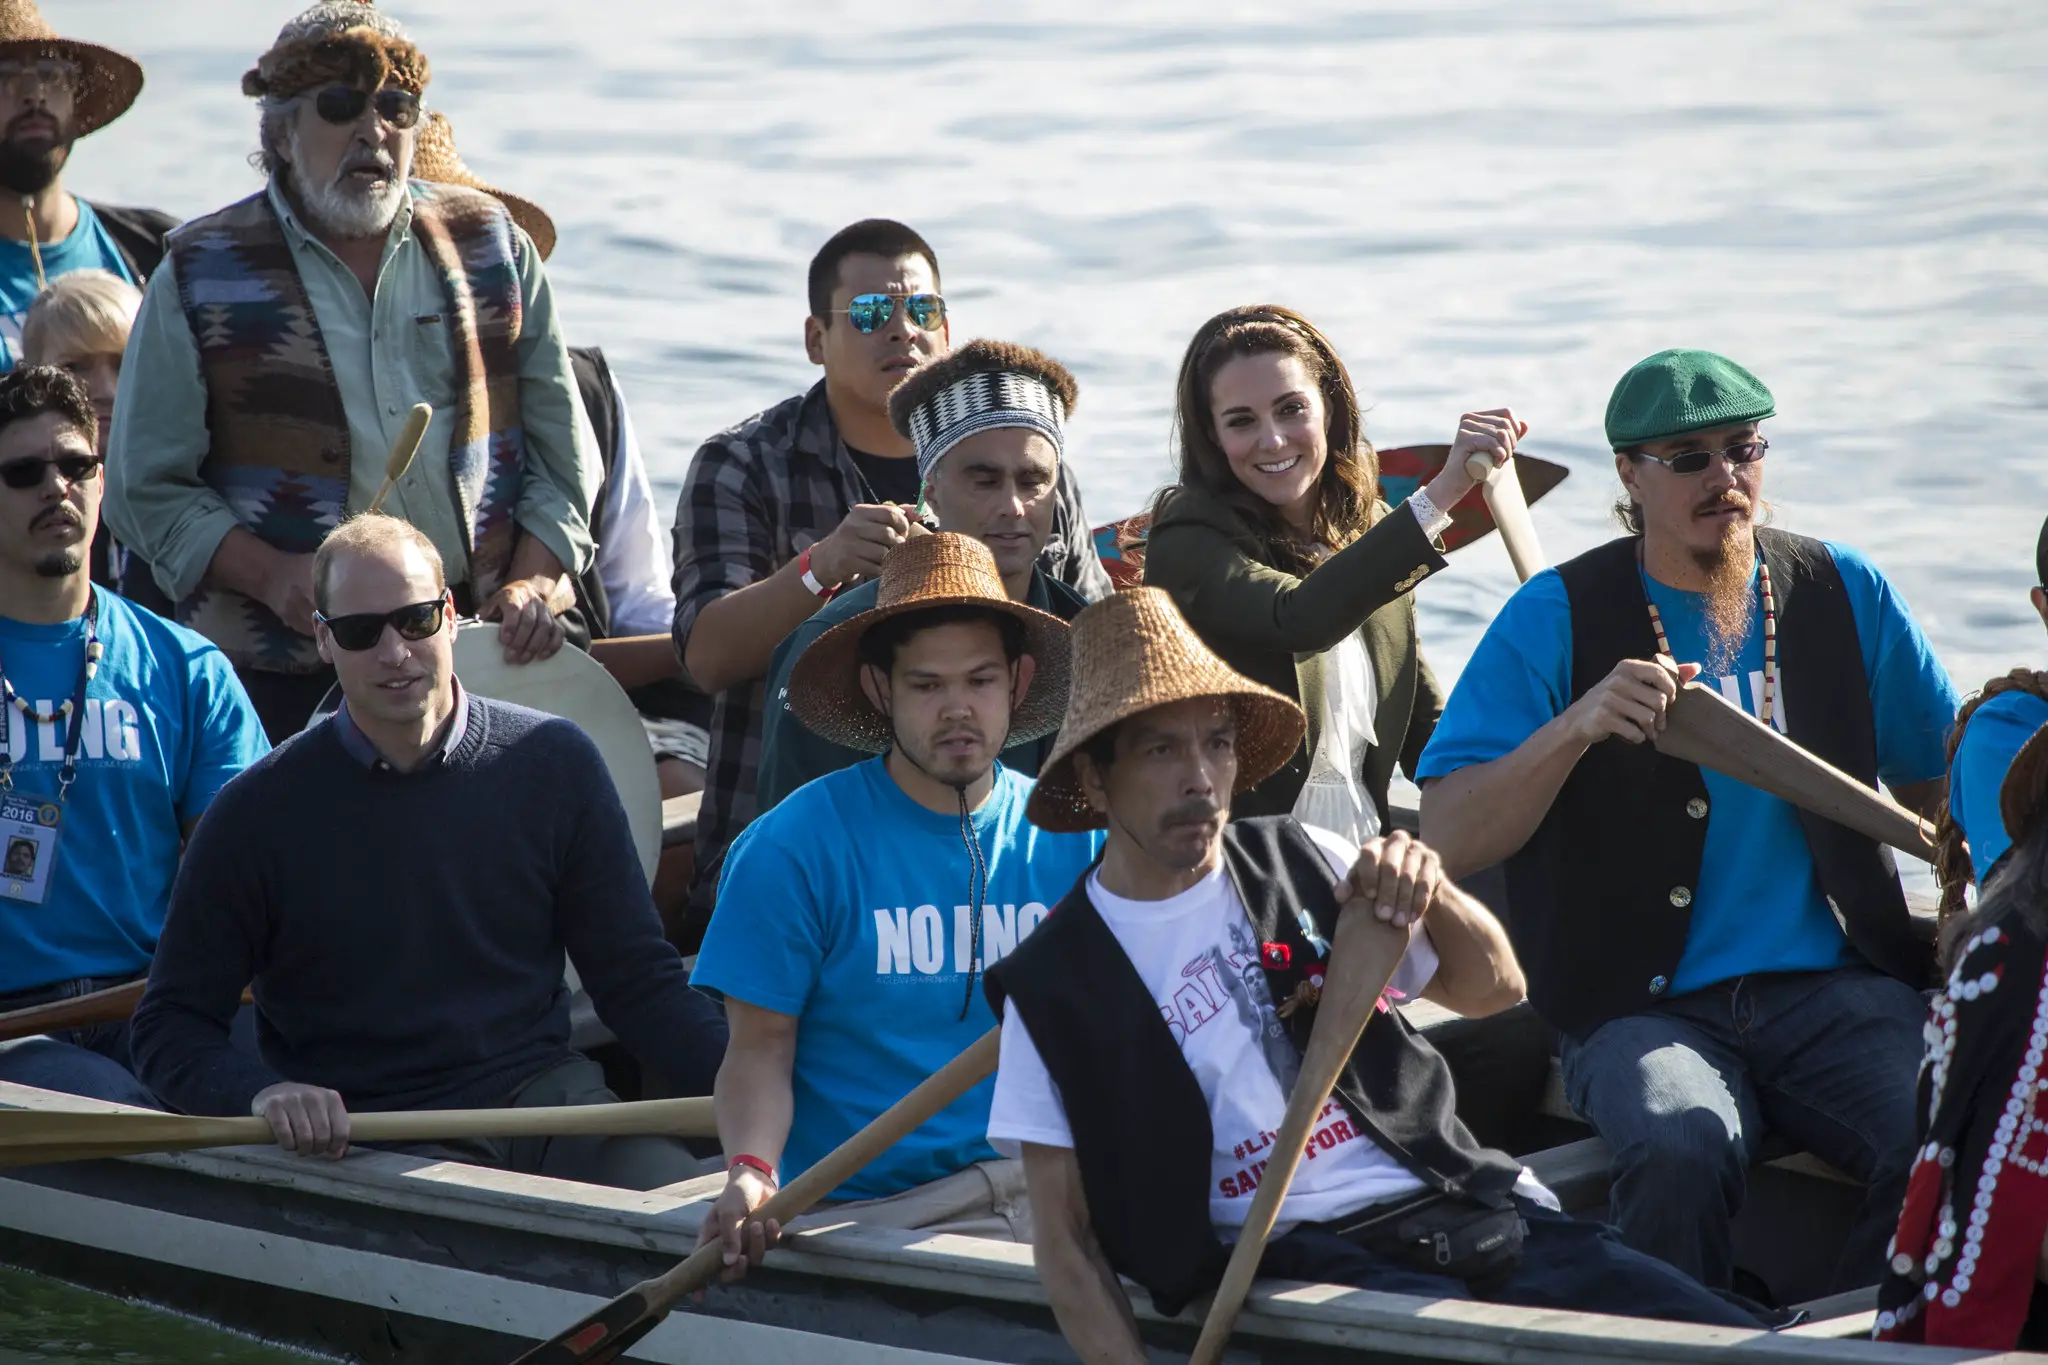 The Duke and Duchess of Cambridge arrived in Haida Gwaii in Canada